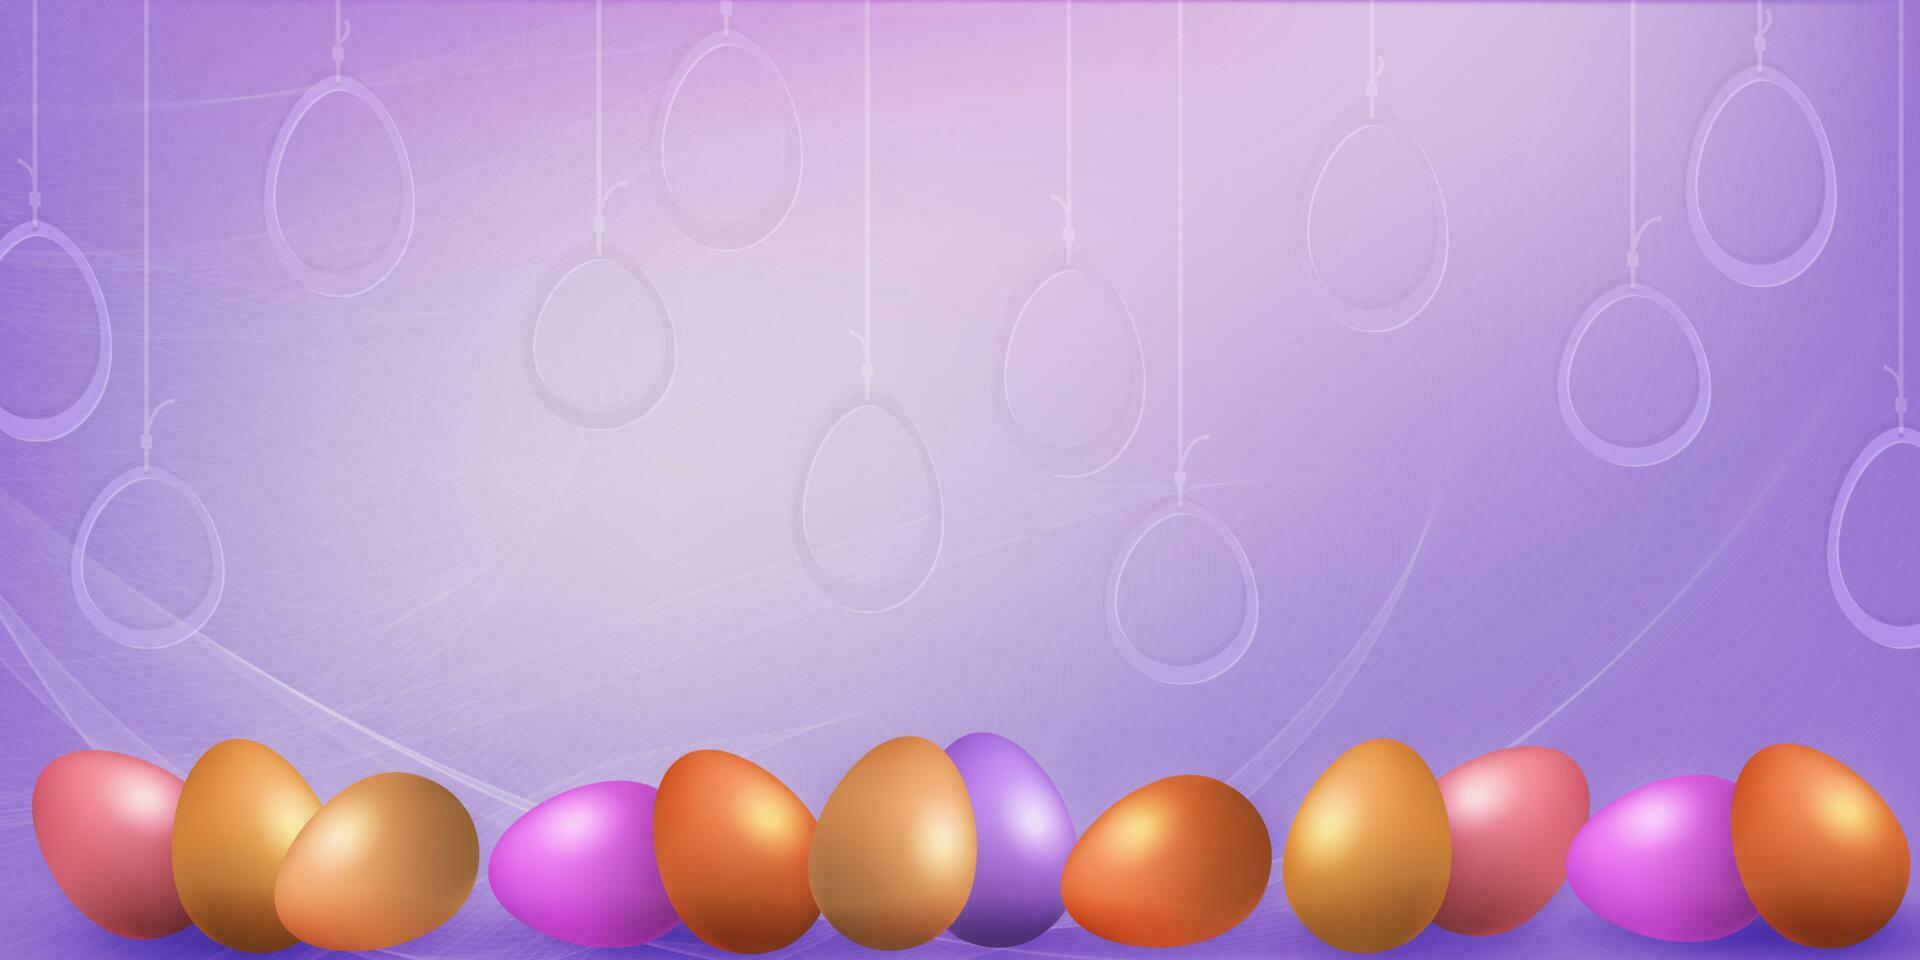 púrpura composición con Pascua de Resurrección huevos, genial tarjeta postal. vector